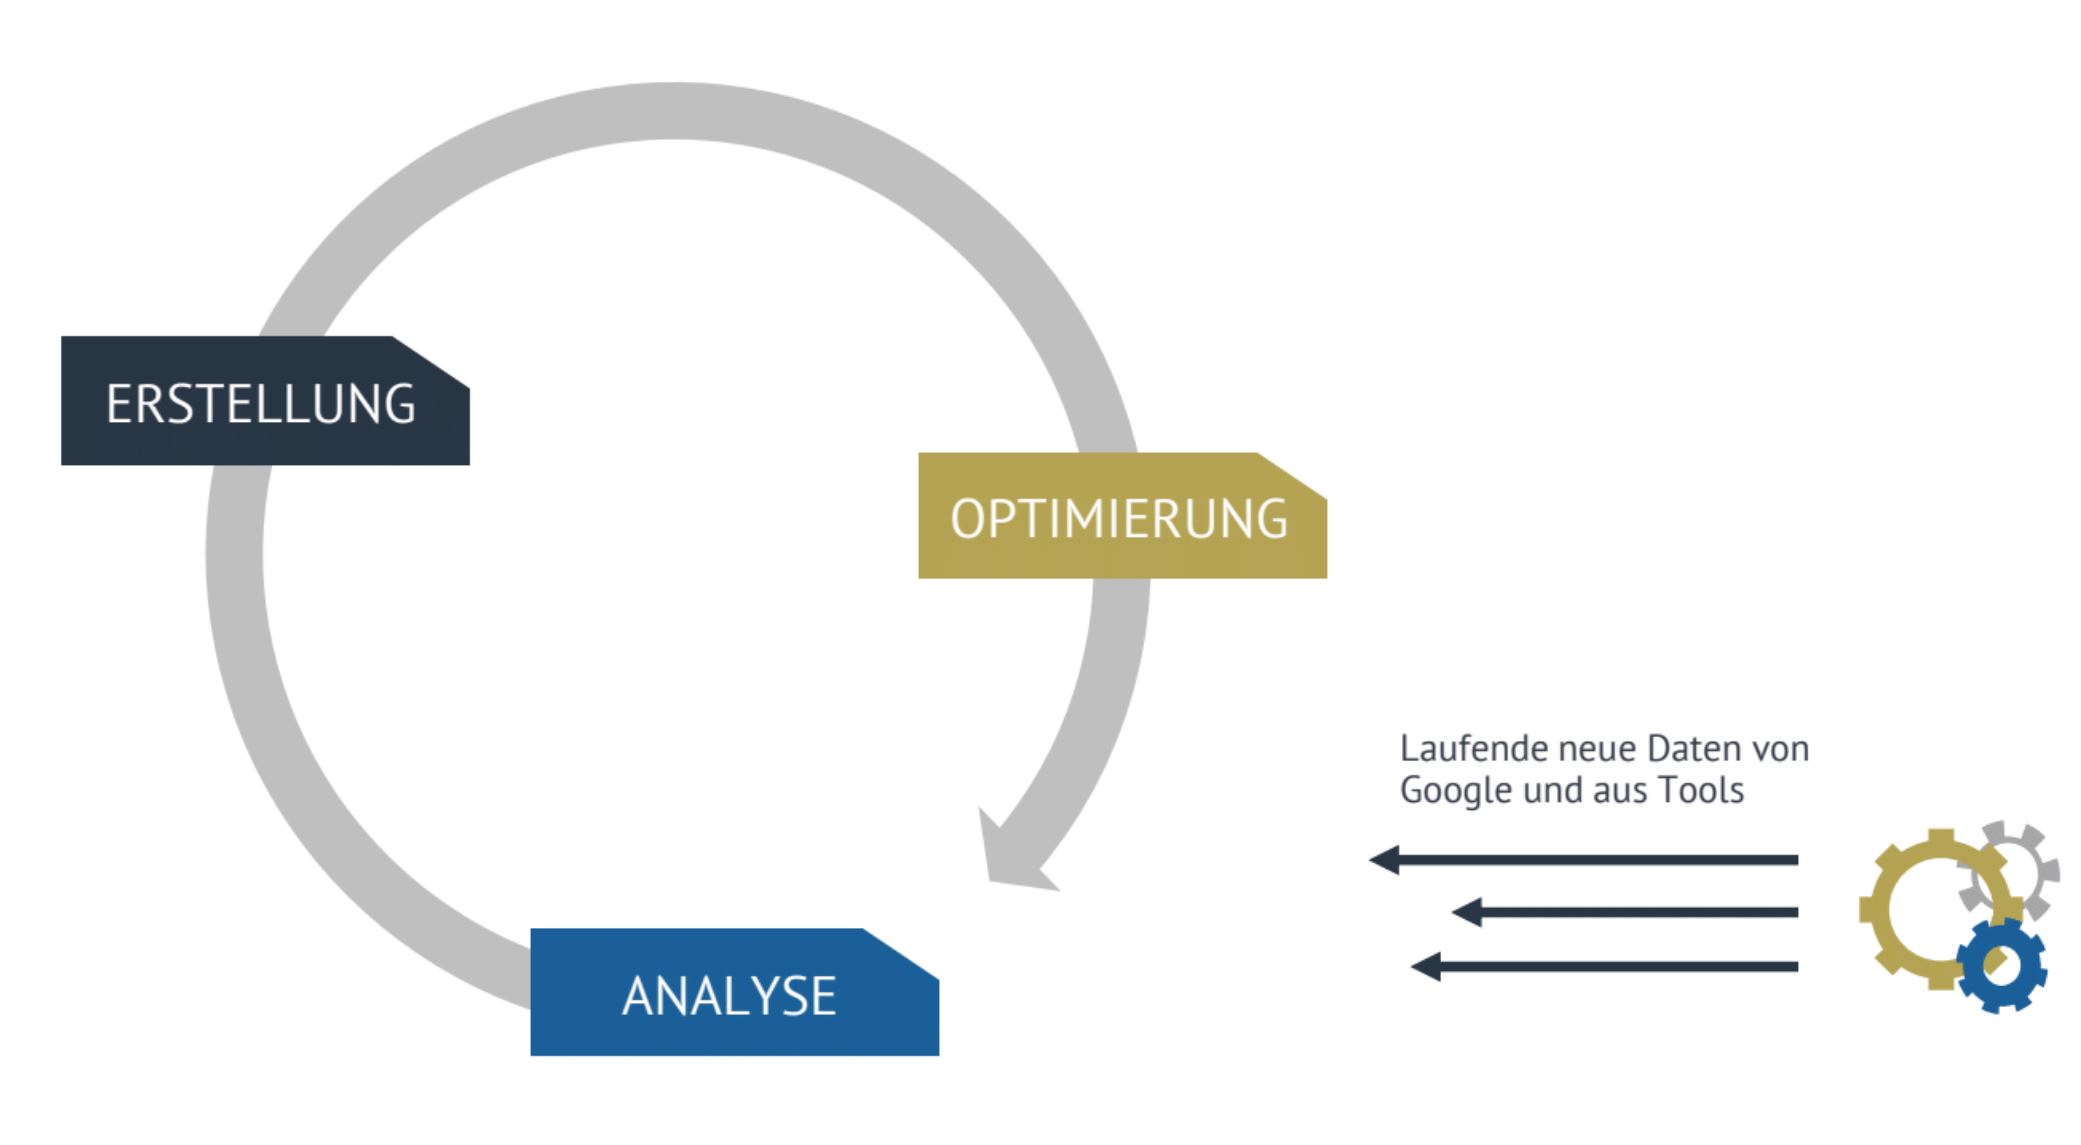 Darstellung eines SEO-Kreislaufs aus Erstellung, Optimierung und Analyse